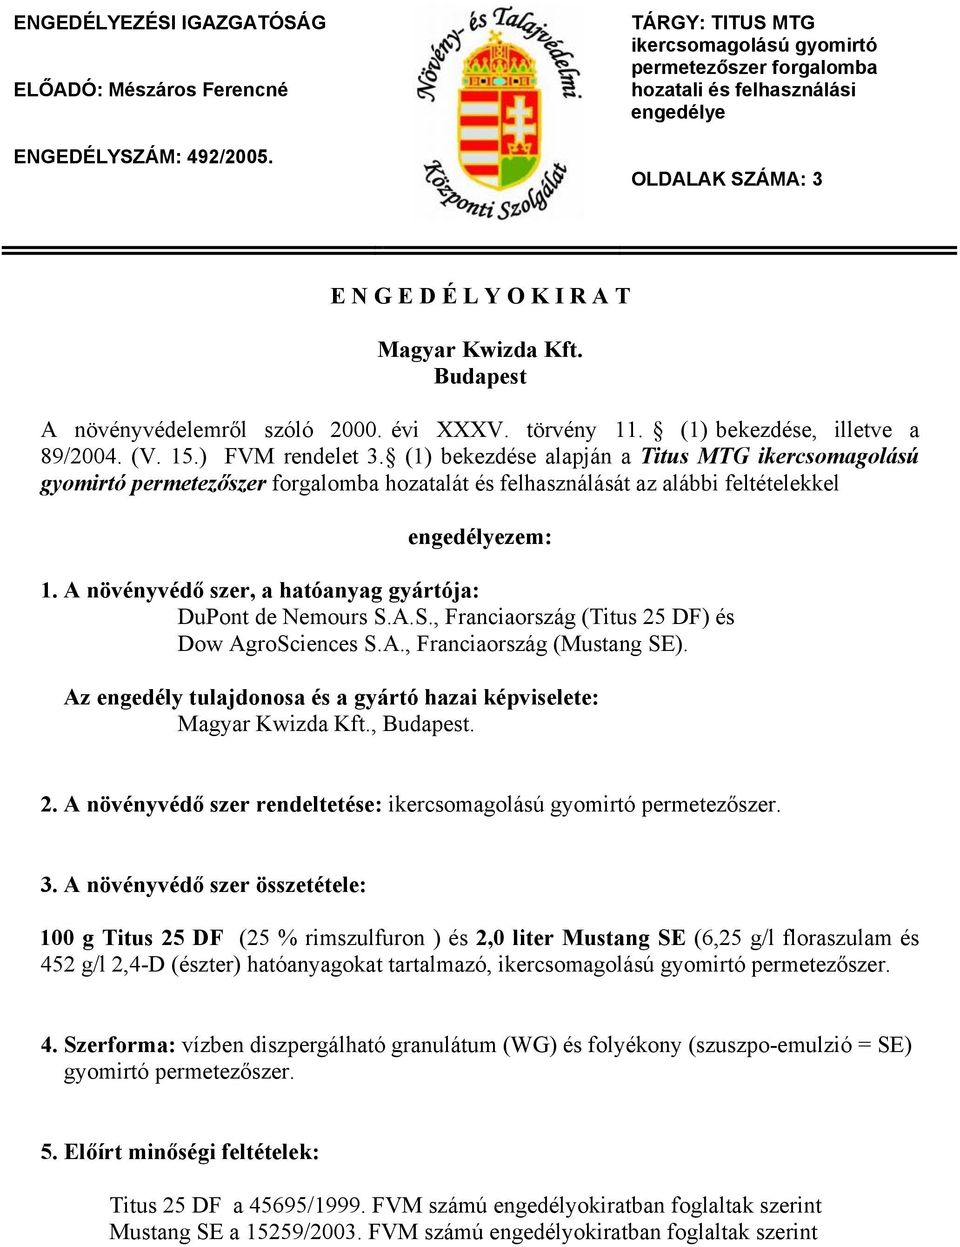 Budapest A növényvédelemről szóló 2000. évi XXXV. törvény 11. (1) bekezdése, illetve a 89/2004. (V. 15.) FVM rendelet 3.